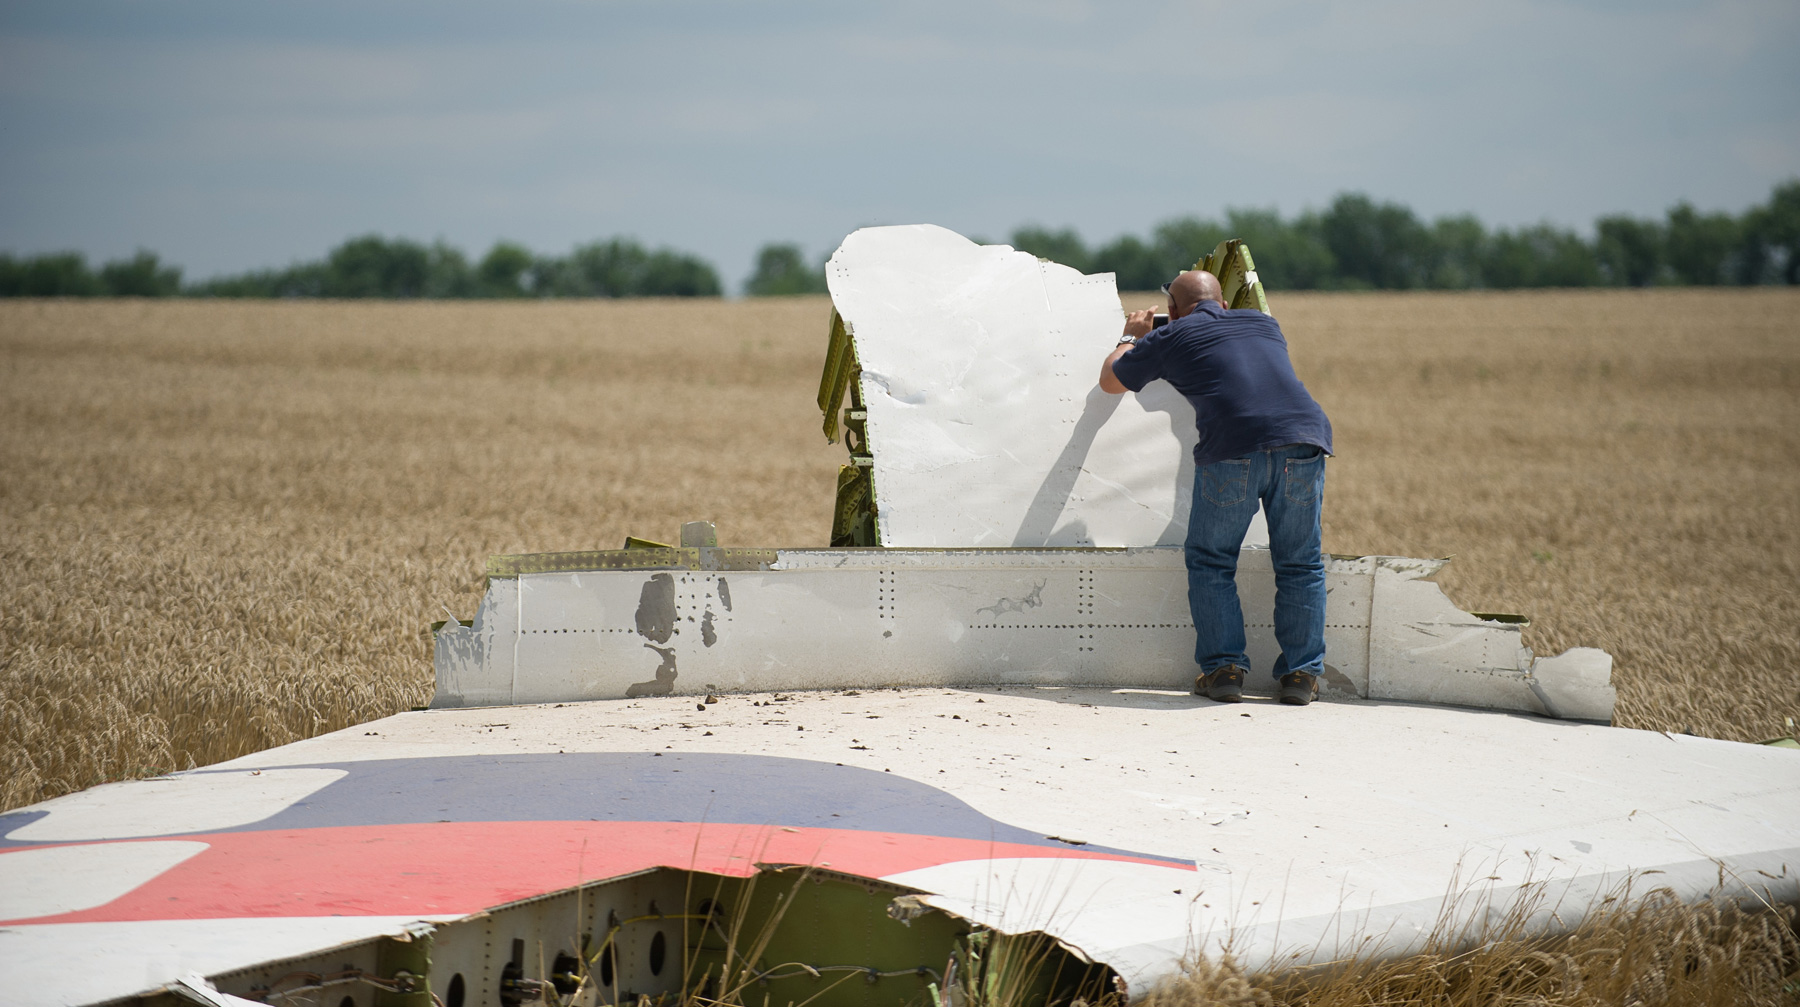 Нет никаких доказательств причастности граждан РФ к катастрофе, подчеркнул замгенпрокурора России Эксперт фотографирует обломки самолета на месте крушения рейса MH17 Malaysia Airlines в Донецкой области Украины, 22 июля 2014 года